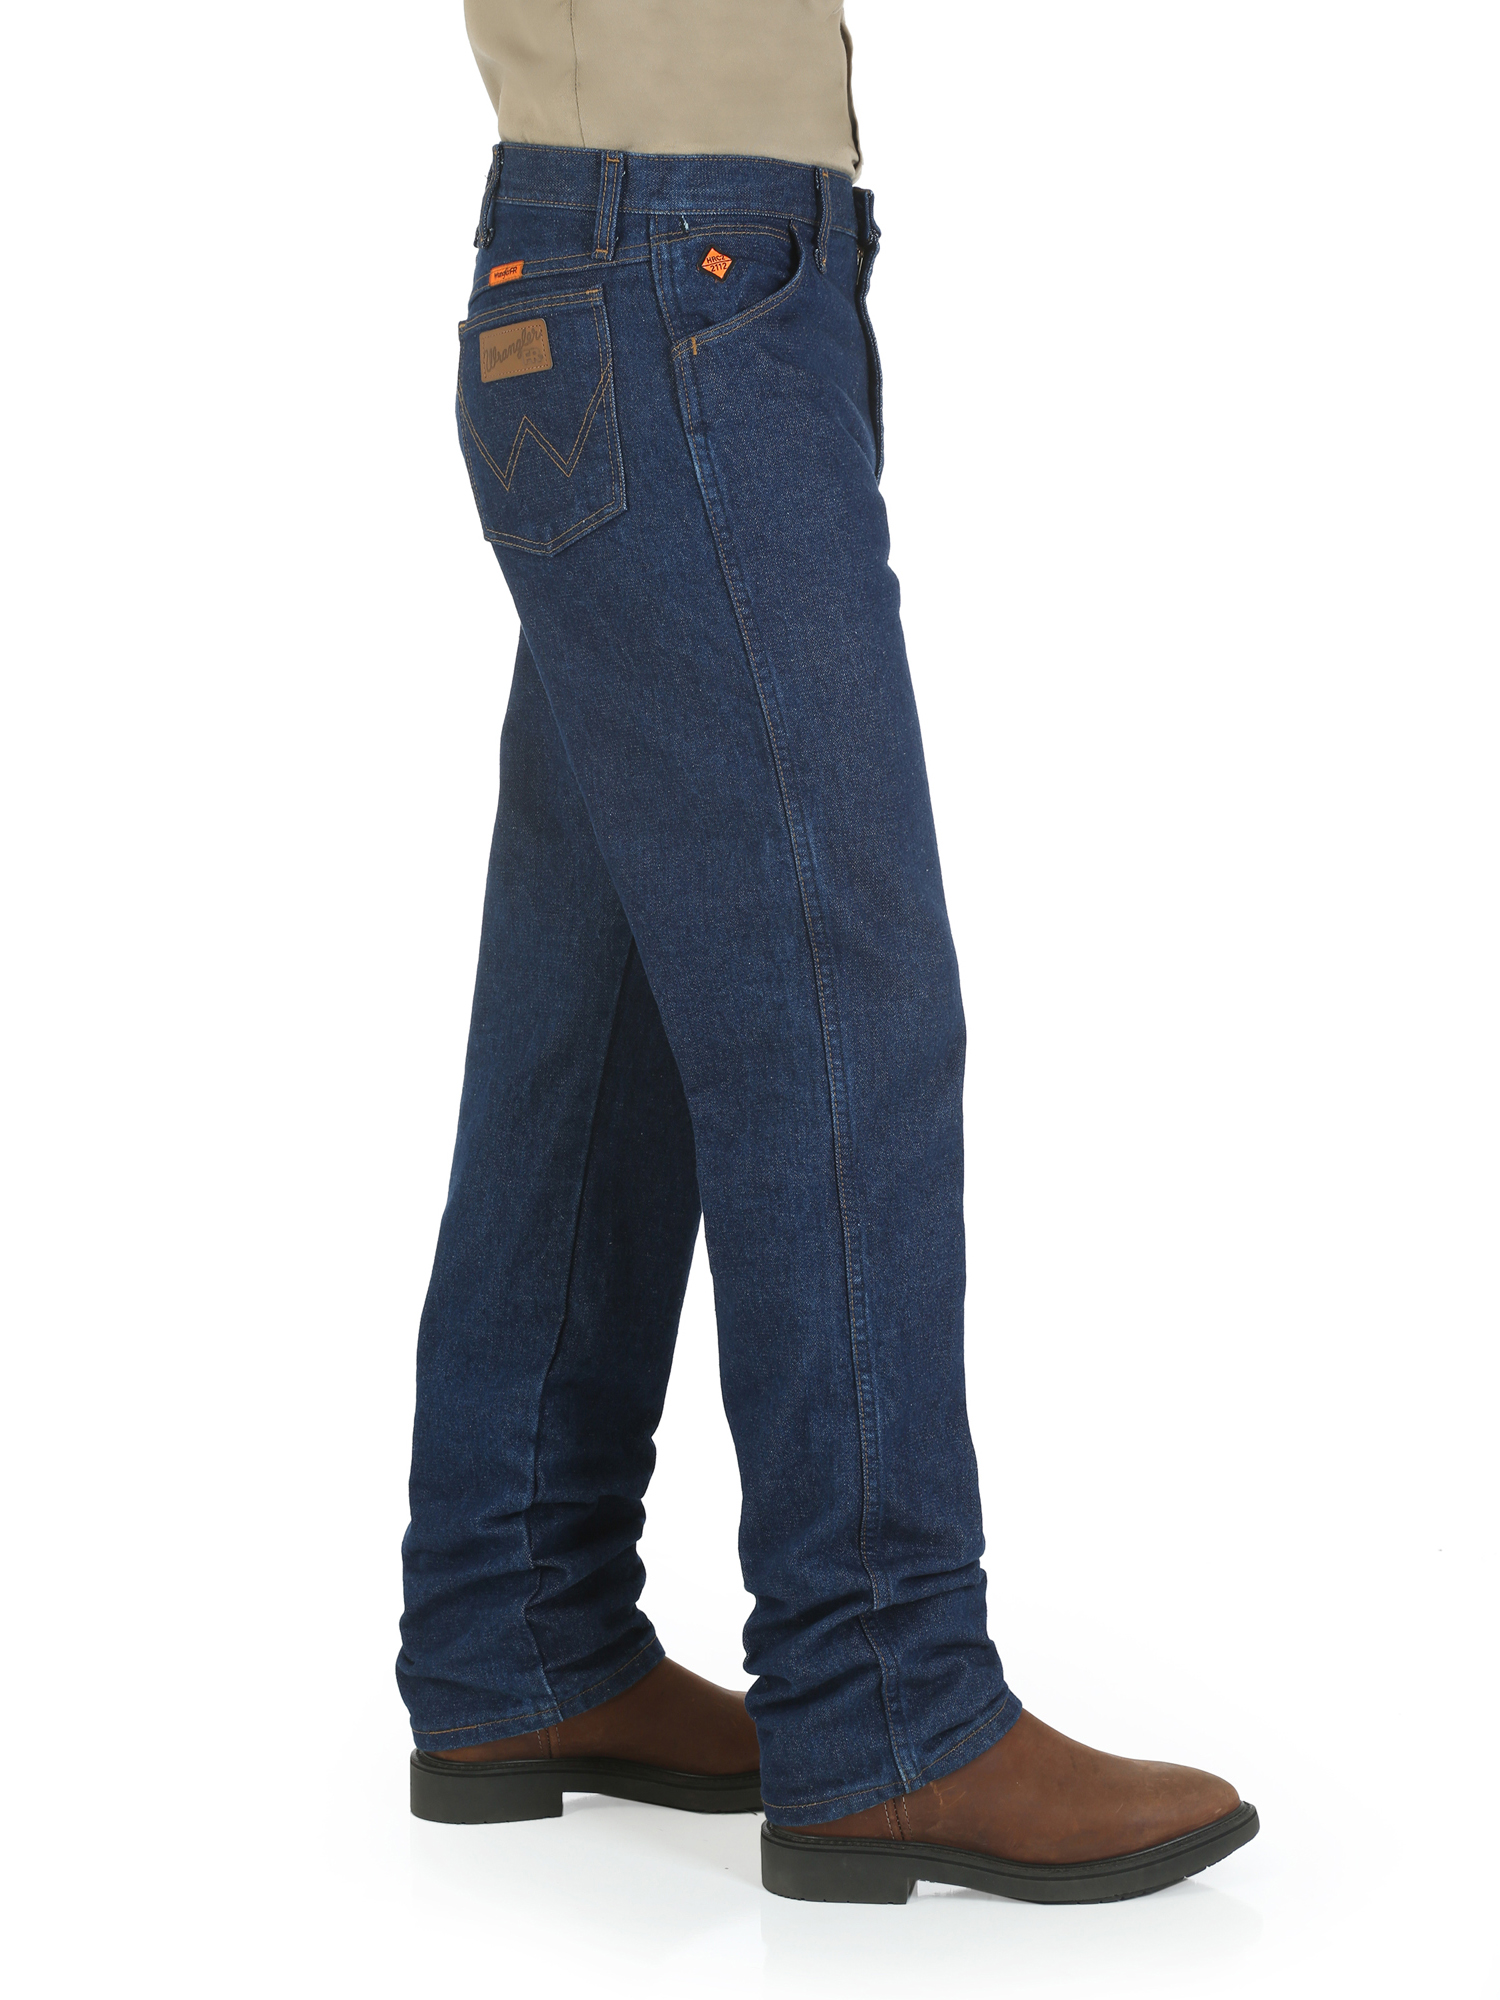 Wrangler Men's Flame Resistant Original Fit Jean - image 4 of 4